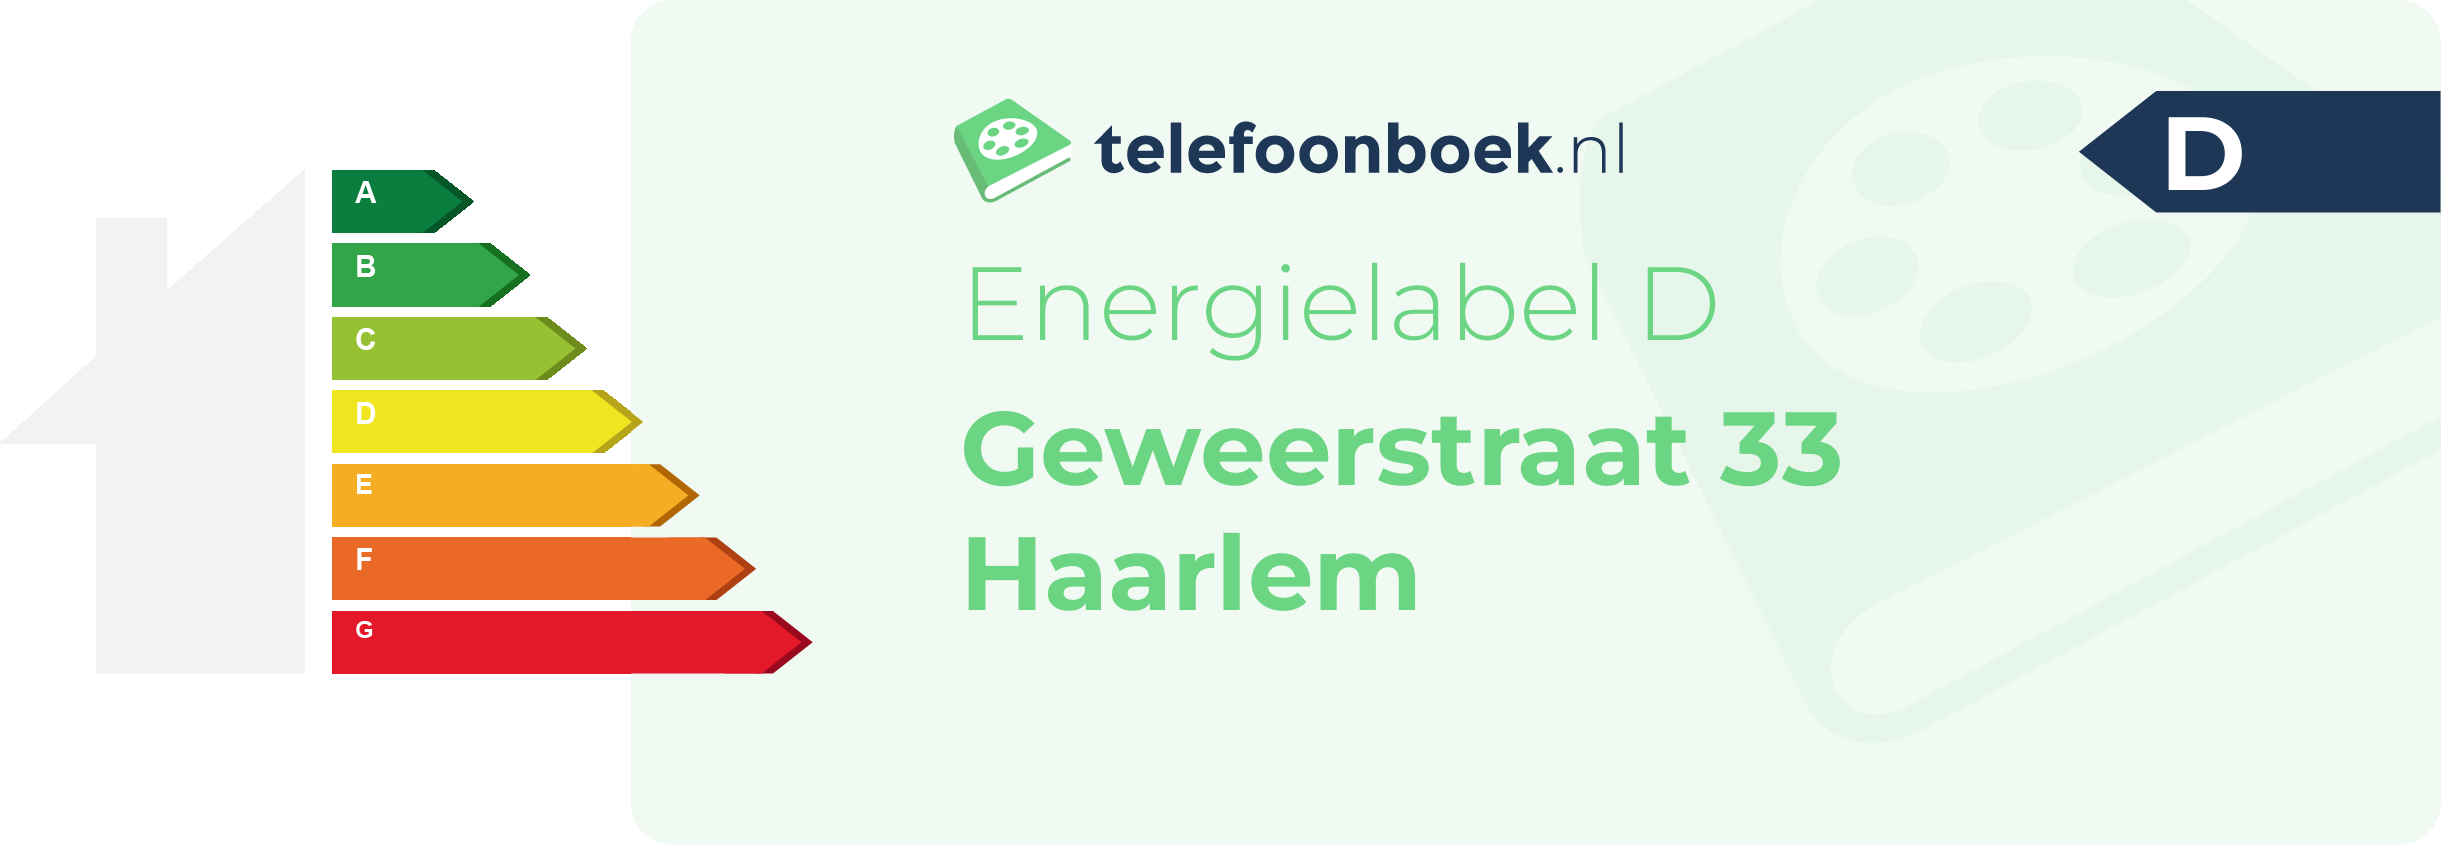 Energielabel Geweerstraat 33 Haarlem